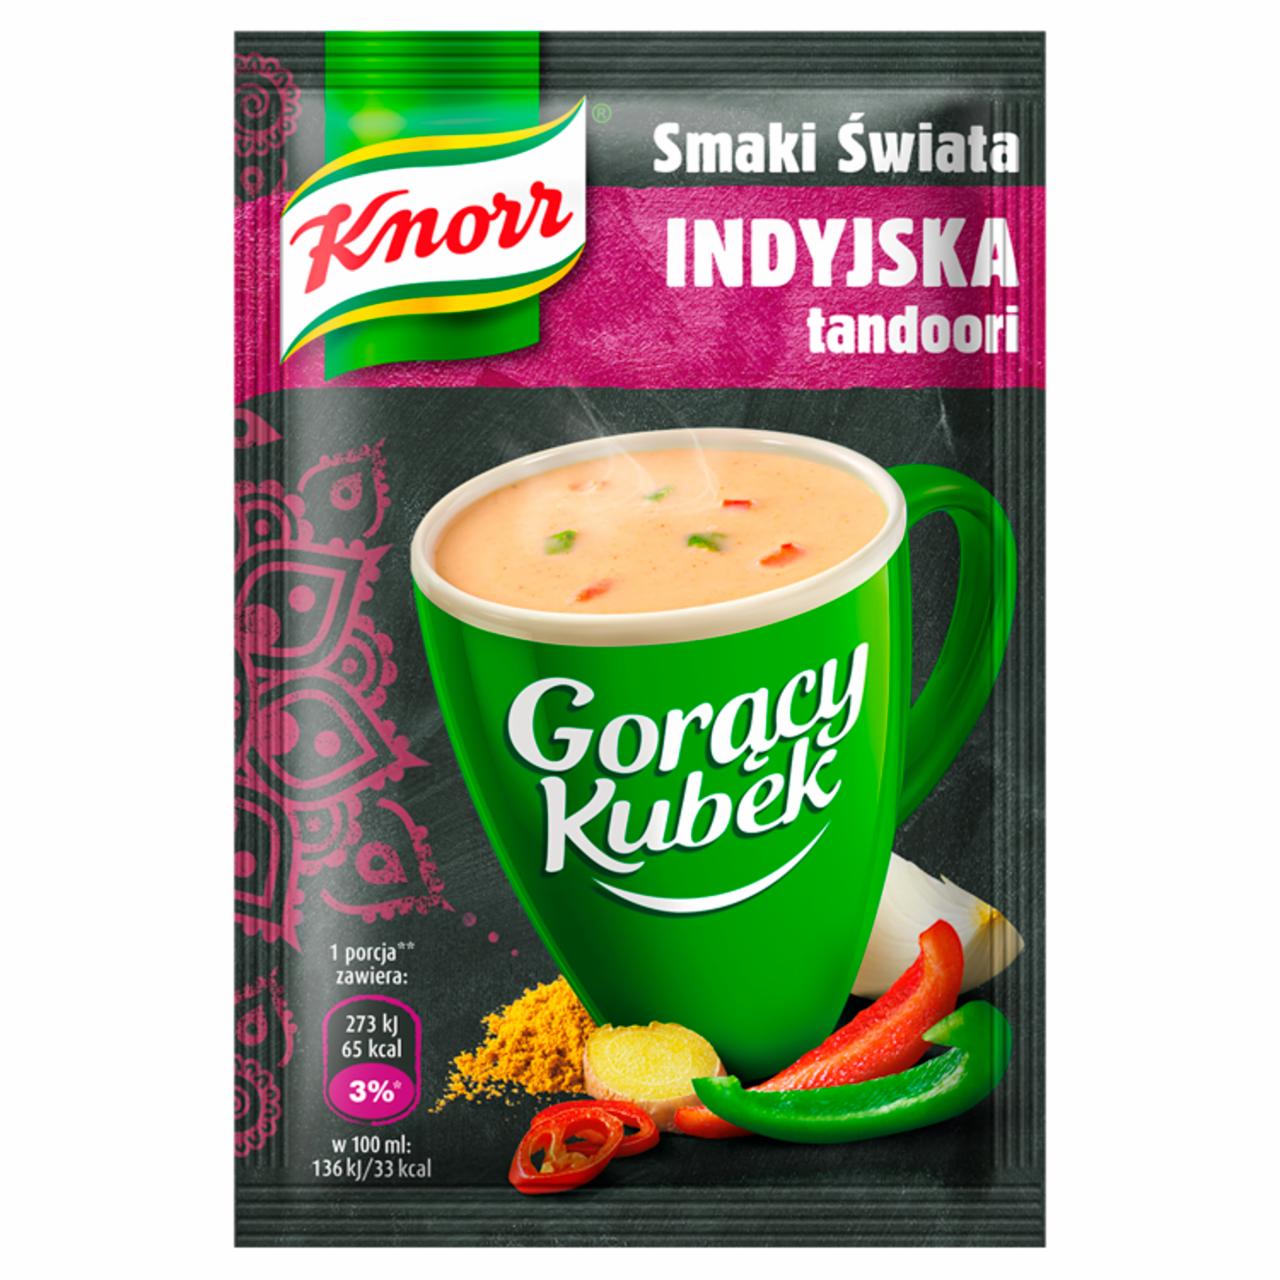 Zdjęcia - Knorr Gorący Kubek Smaki Świata Indyjska tandoori 15 g